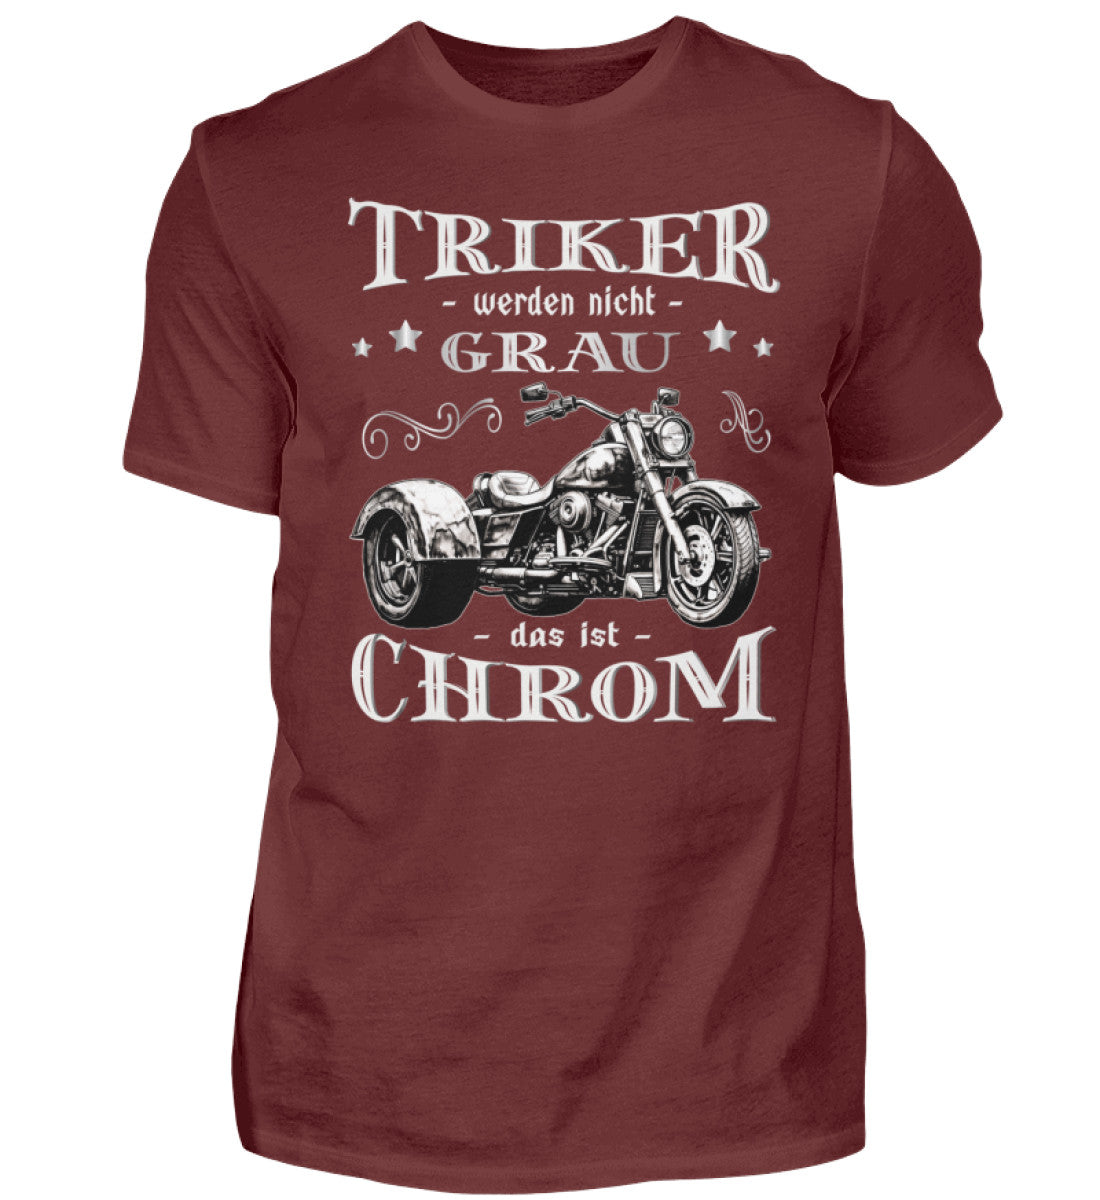 Ein Triker T-Shirt für Trikefahrer von Wingbikers mit dem Aufdruck, Triker werden nicht grau - Das ist Chrom, in weinrot.